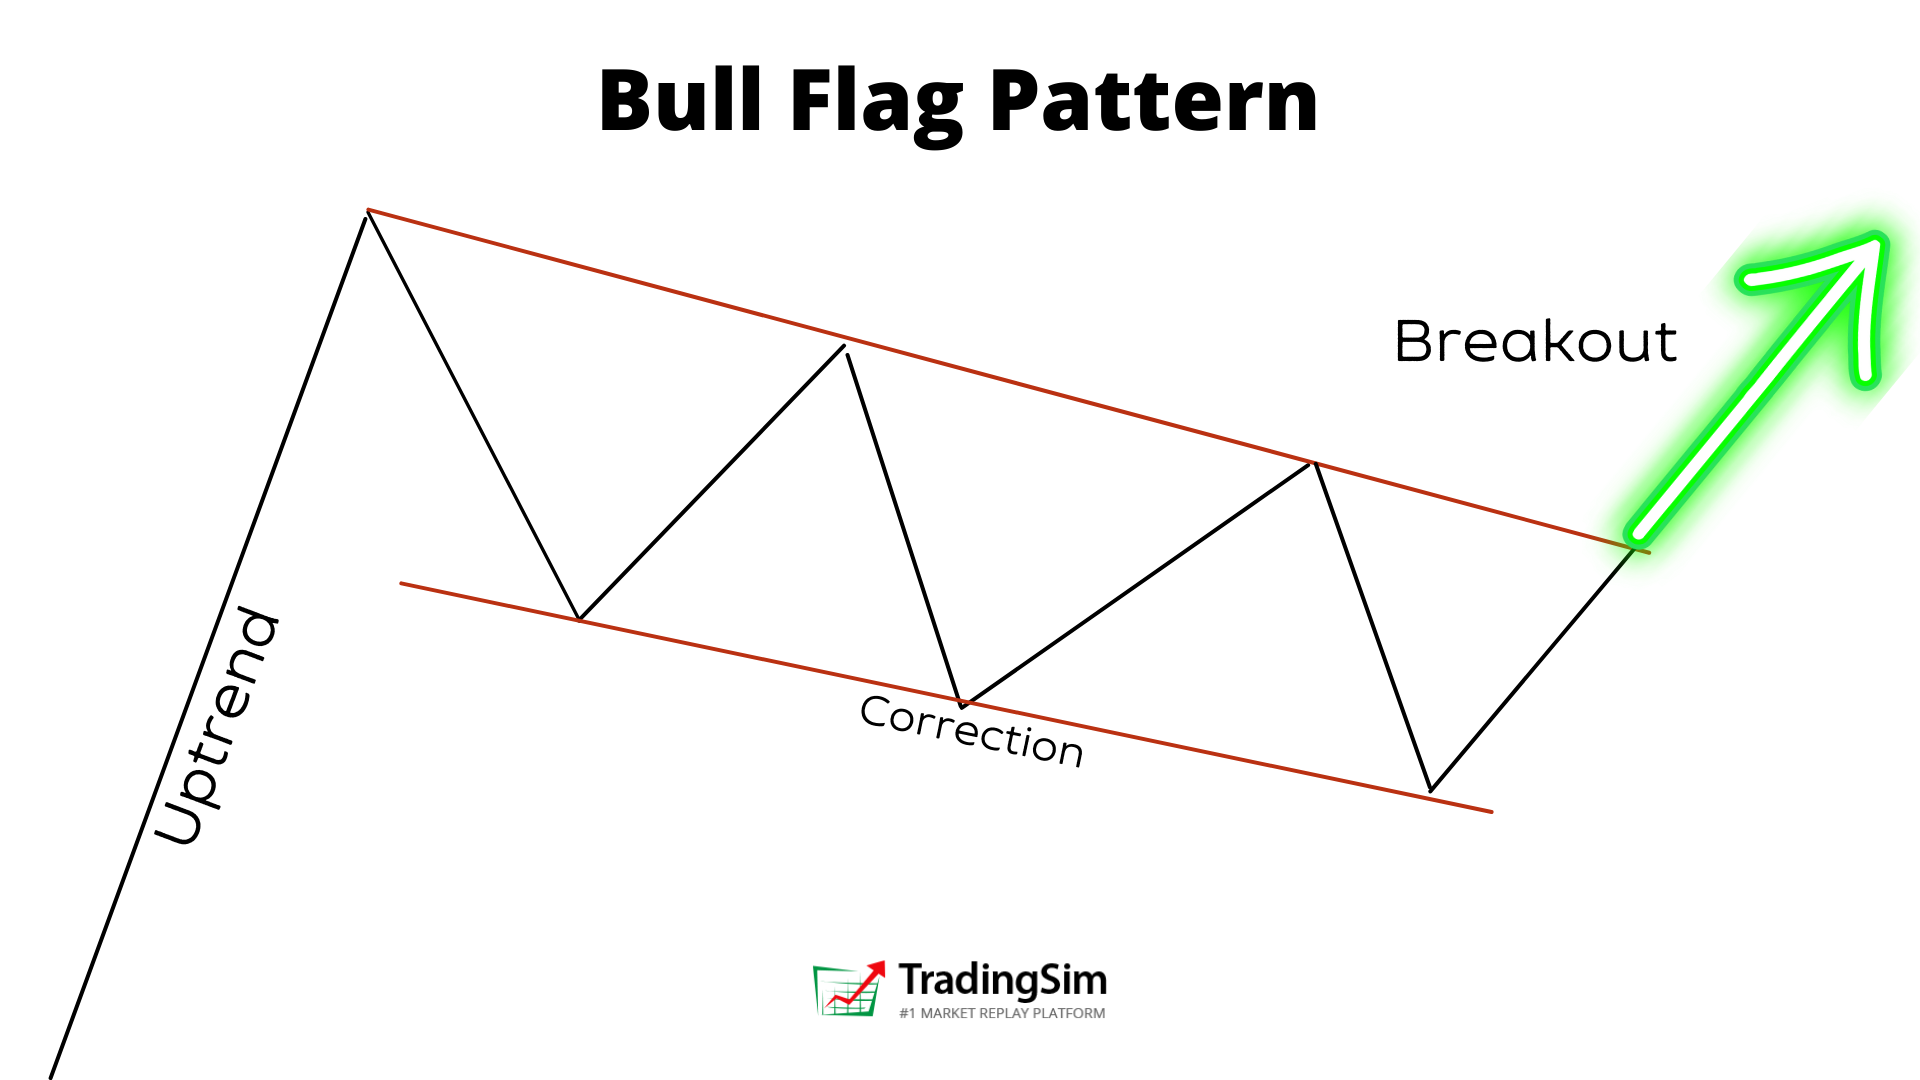 Bull Flag Pattern Diagram